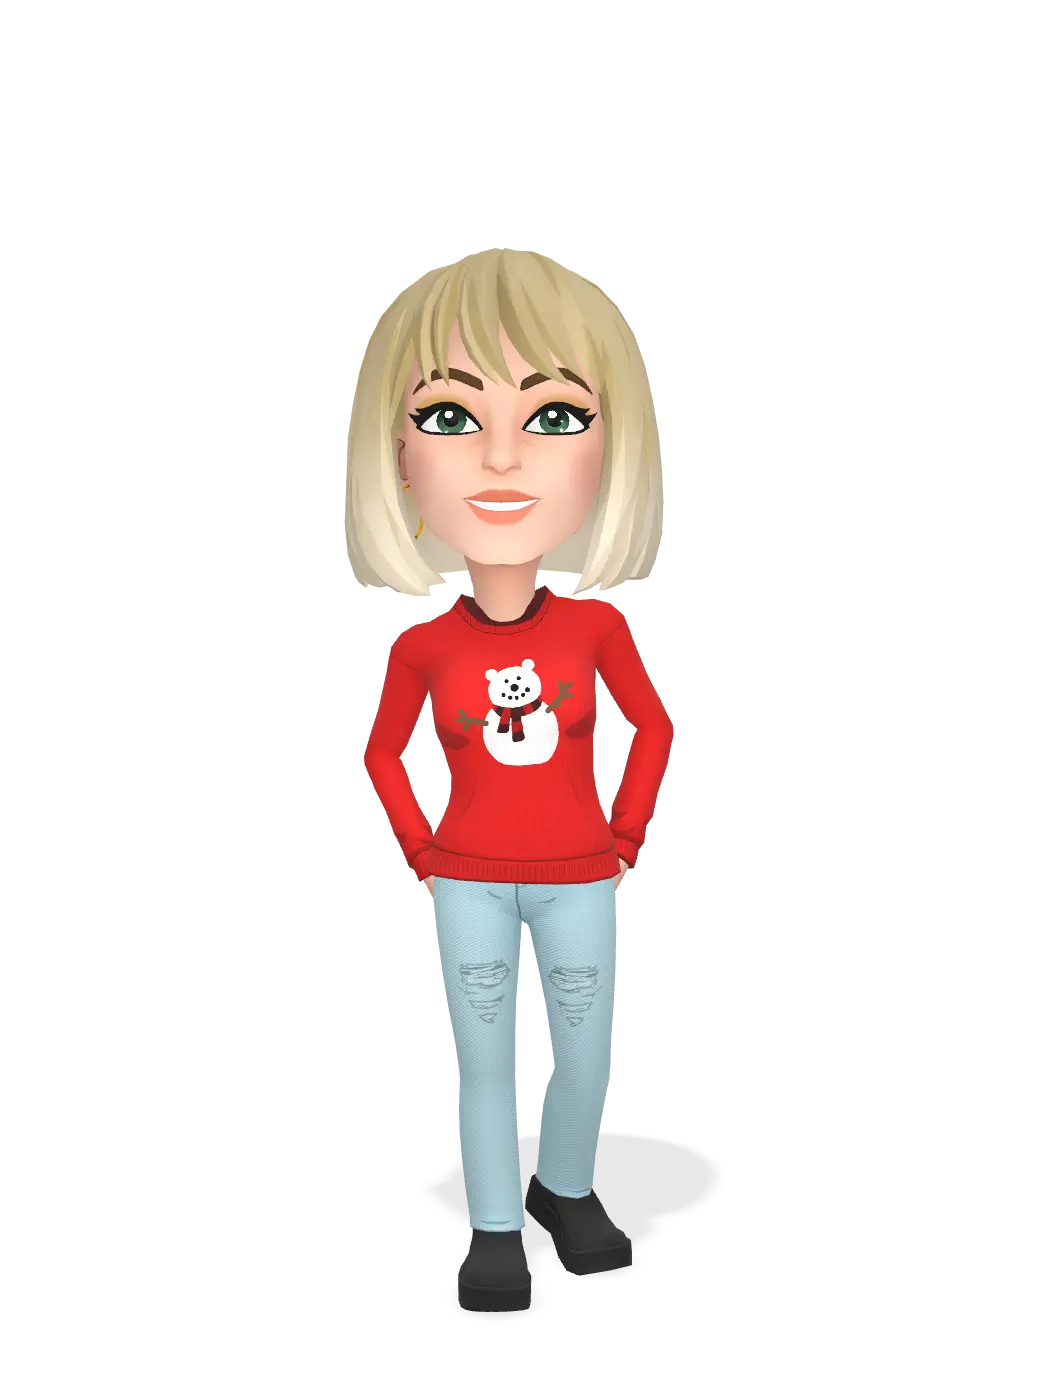 3D Bitmoji for kimgarst avatar